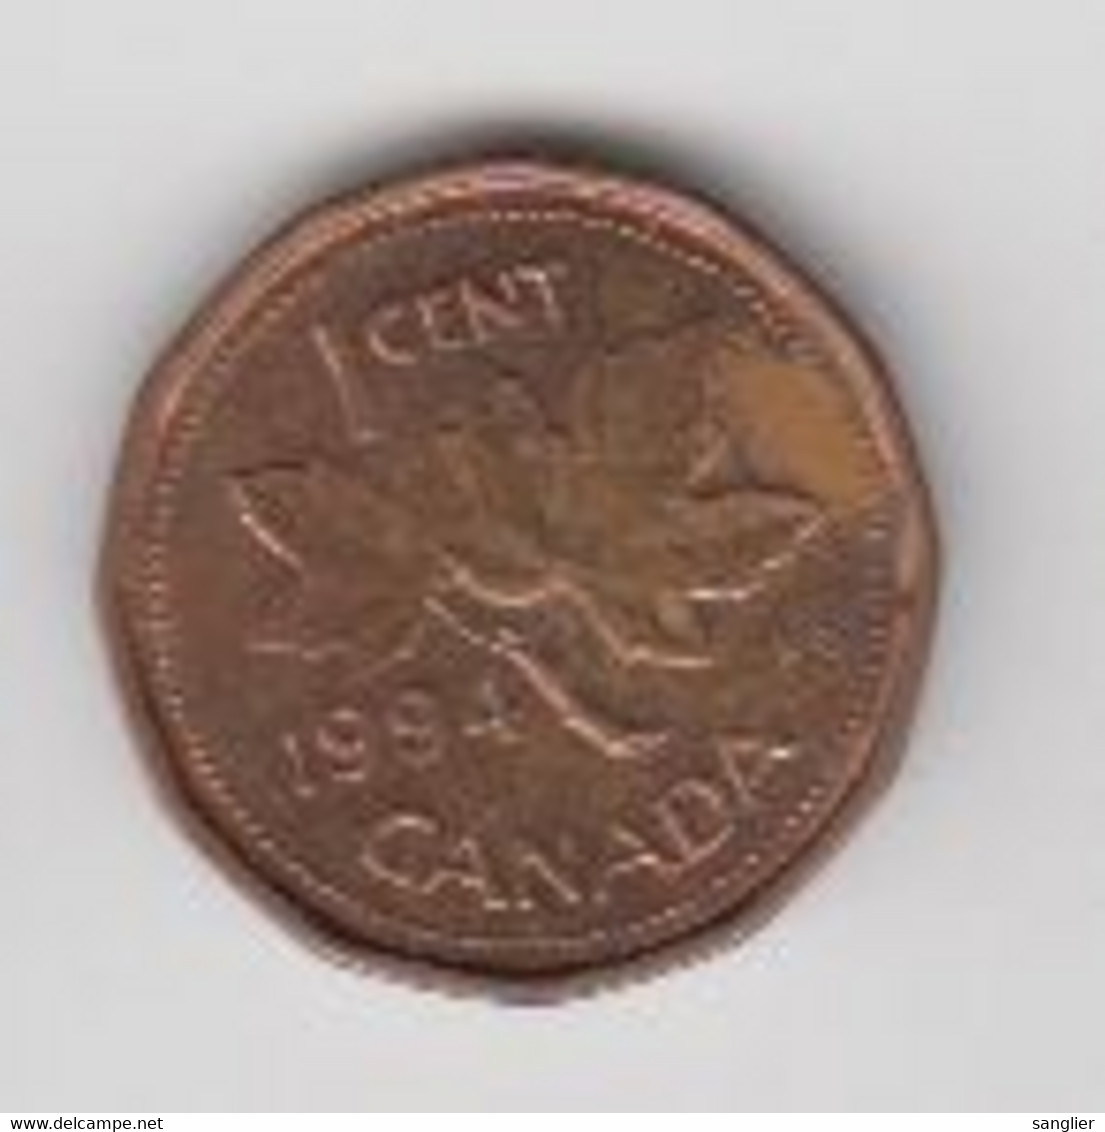 CANADA - 1 CENT 1994 - Canada